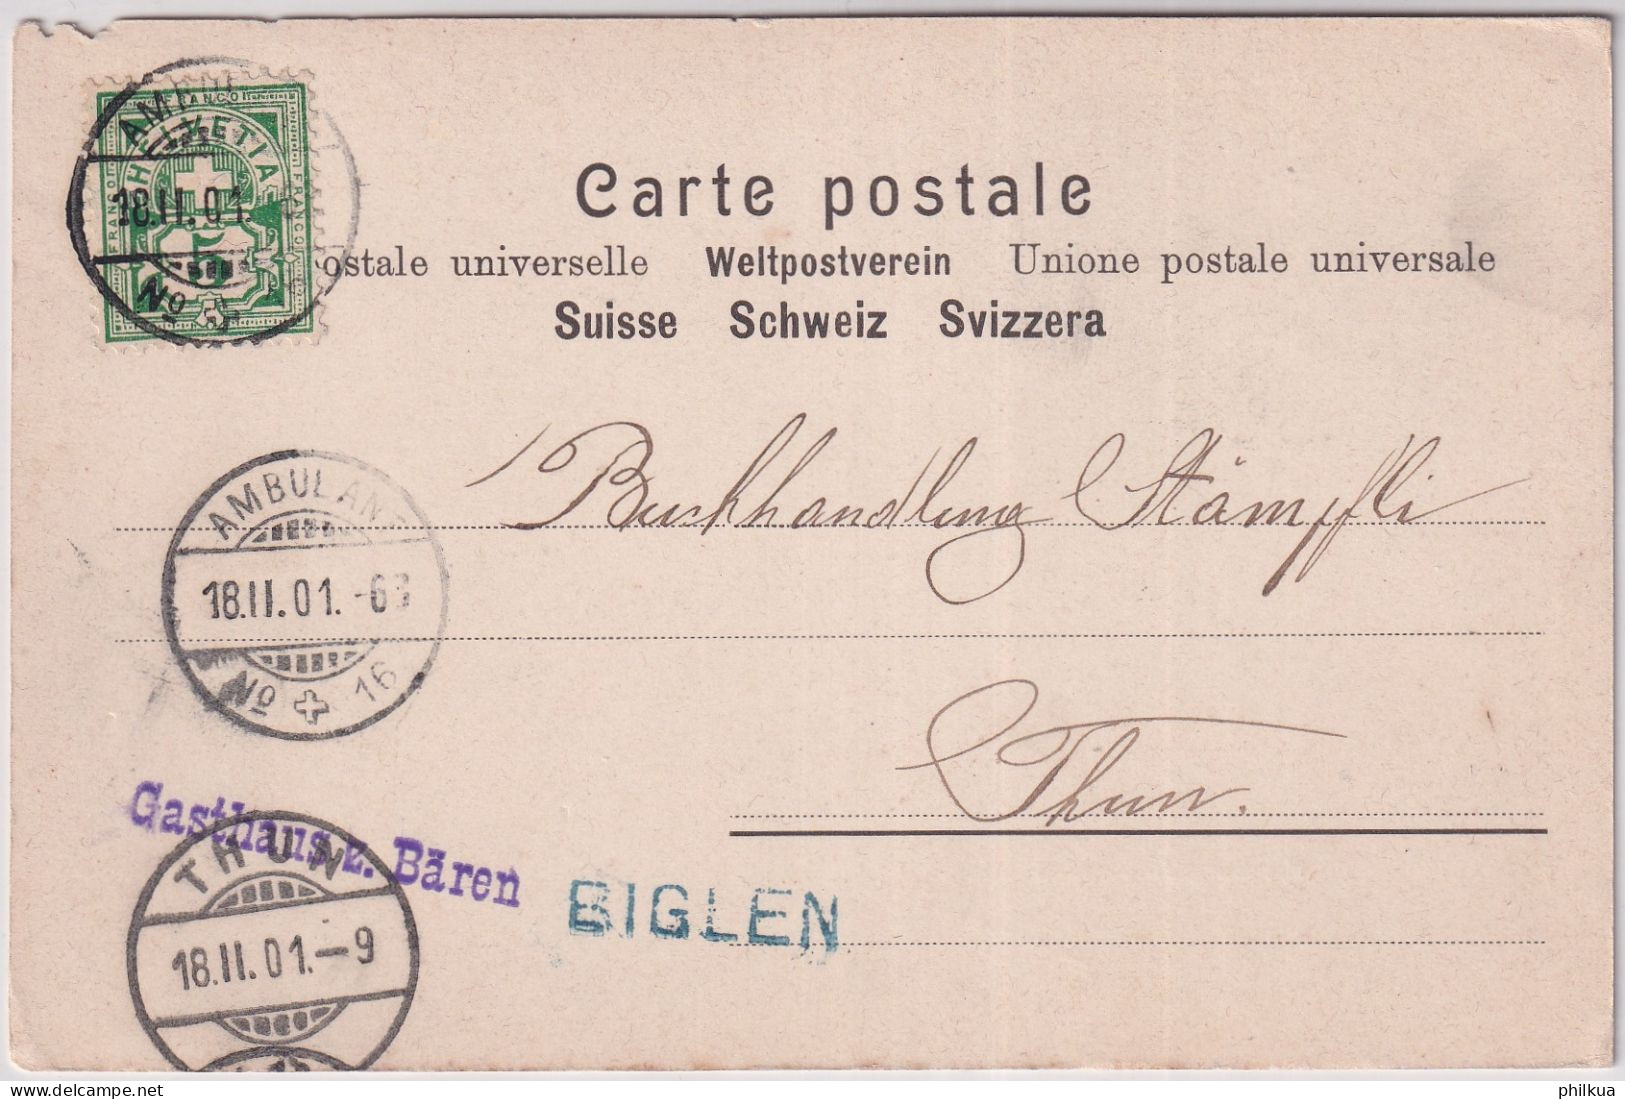 Gelaufen 1901 - Gruss Aus Biglen - Verlag Fritz Oesch, Bern Mit Handlung J. Moser - Sommer (Frasspuren) - Biglen